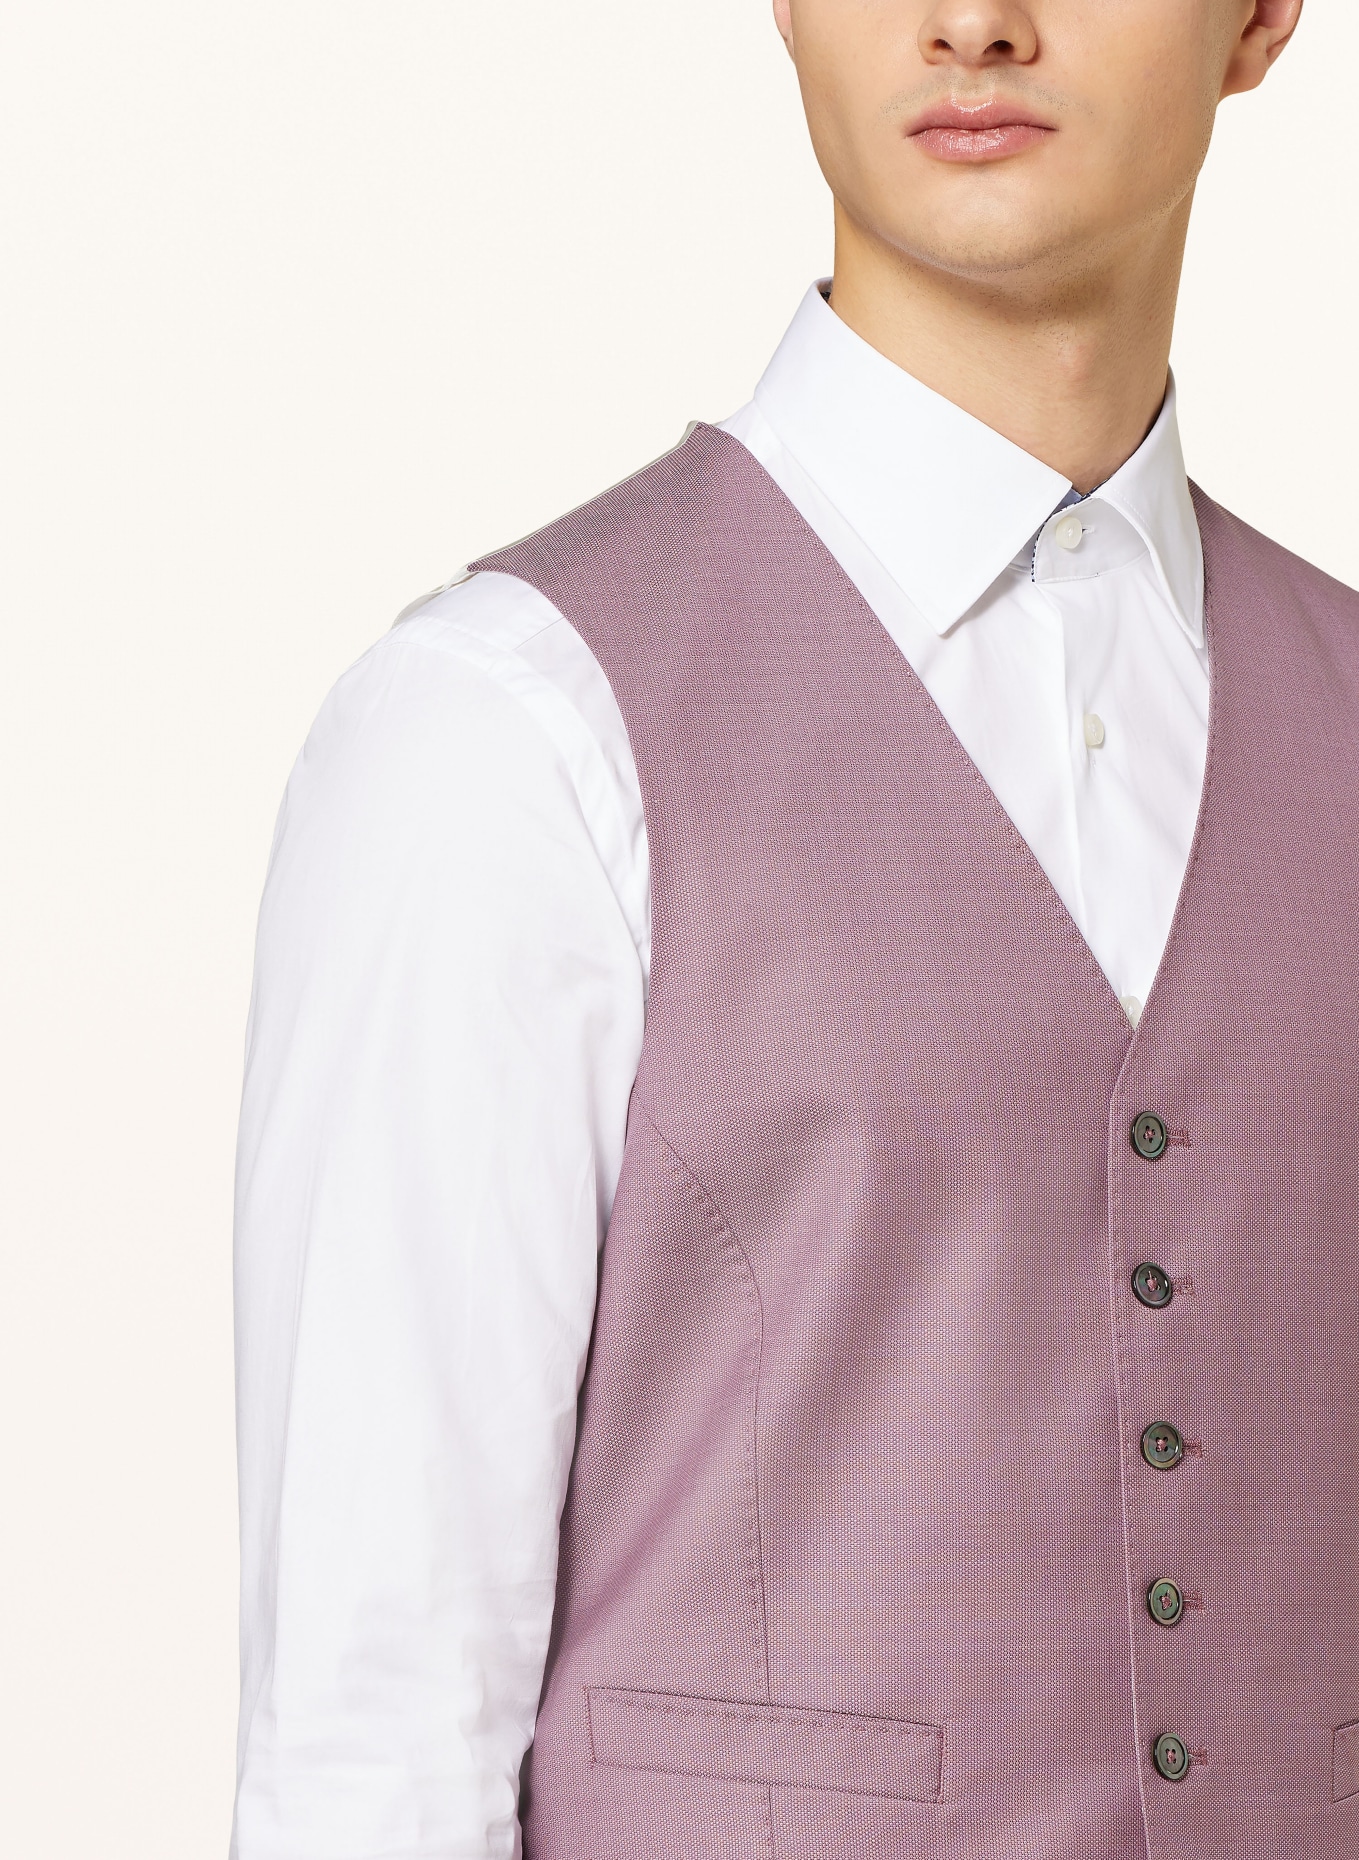 JOOP! Suit vest WEAZER slim fit, Color: 650 Dark Pink                  650 (Image 5)